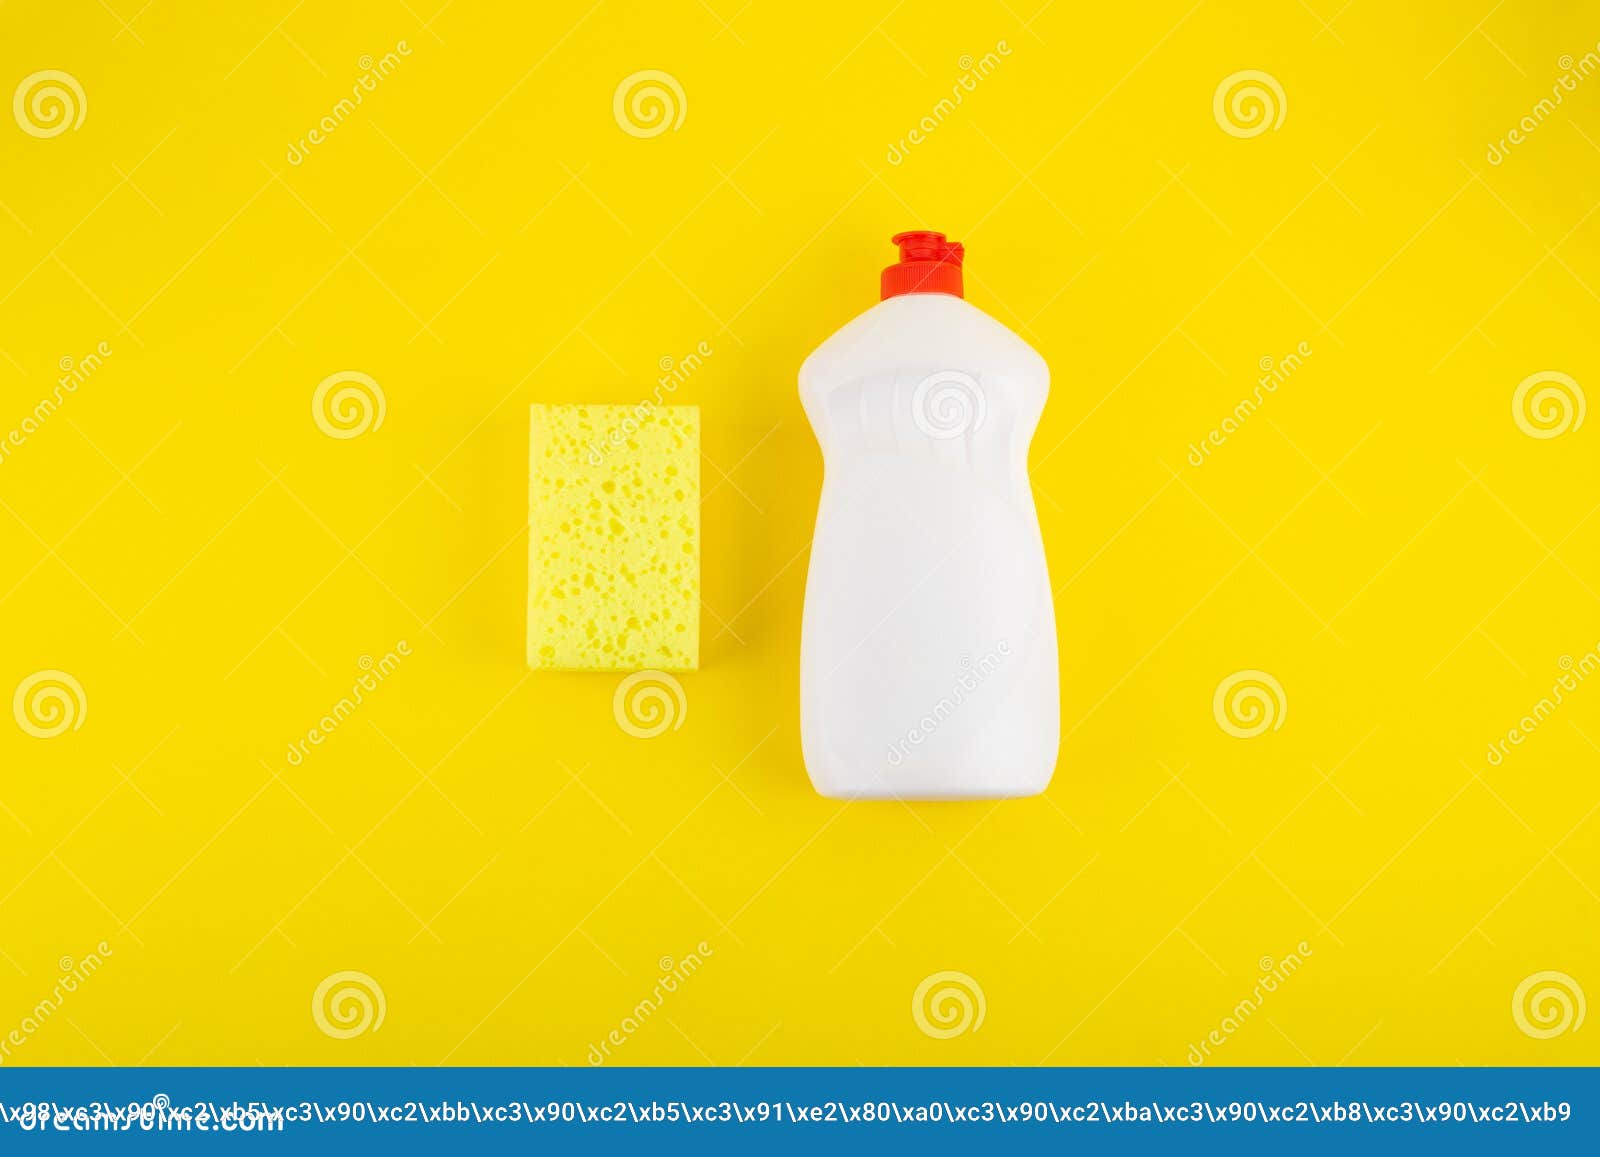 https://thumbs.dreamstime.com/z/esponja-amarilla-de-limpieza-y-detergente-para-platos-con-fondo-amarillo-cierre-la-vista-plana-superior-empresa-conceptos-cocina-253744503.jpg